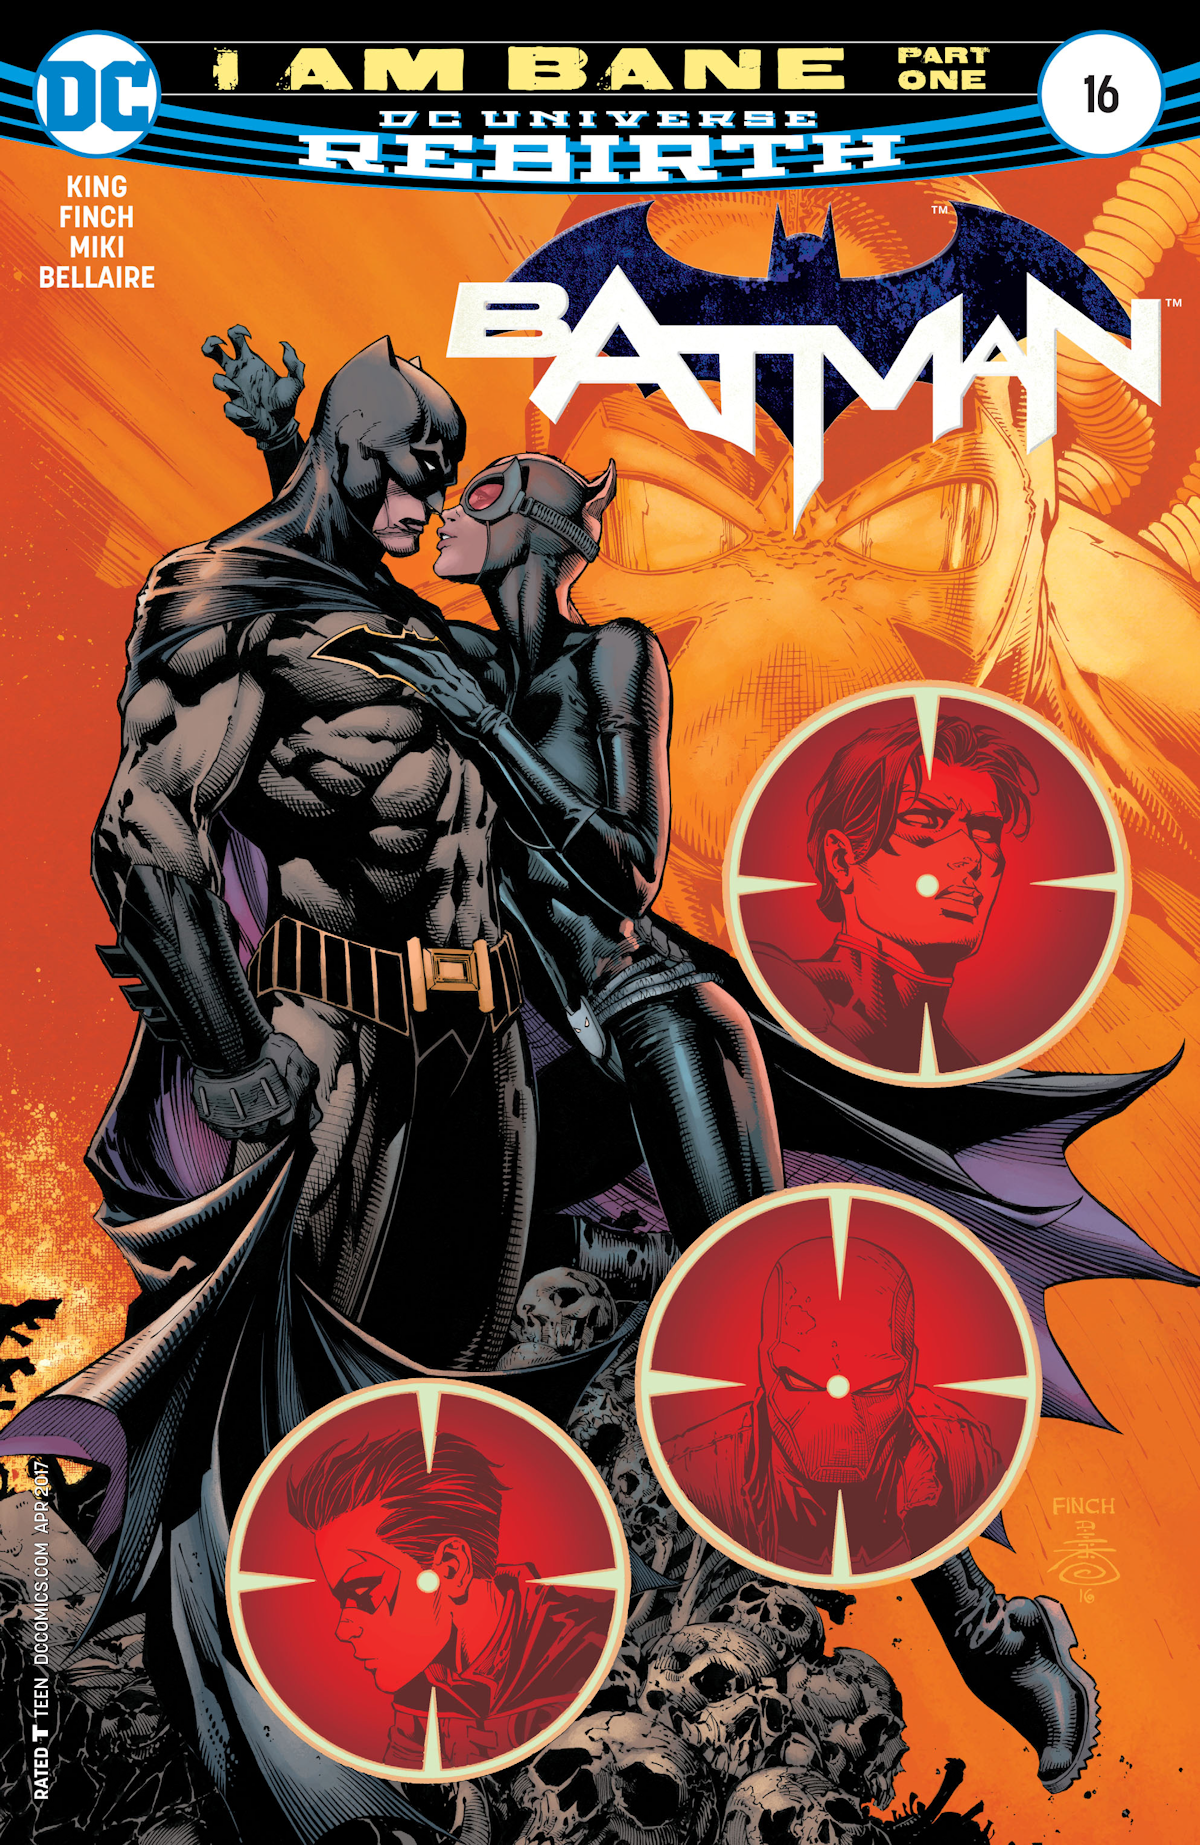 Batman Vol. 3 16 (Cover A)